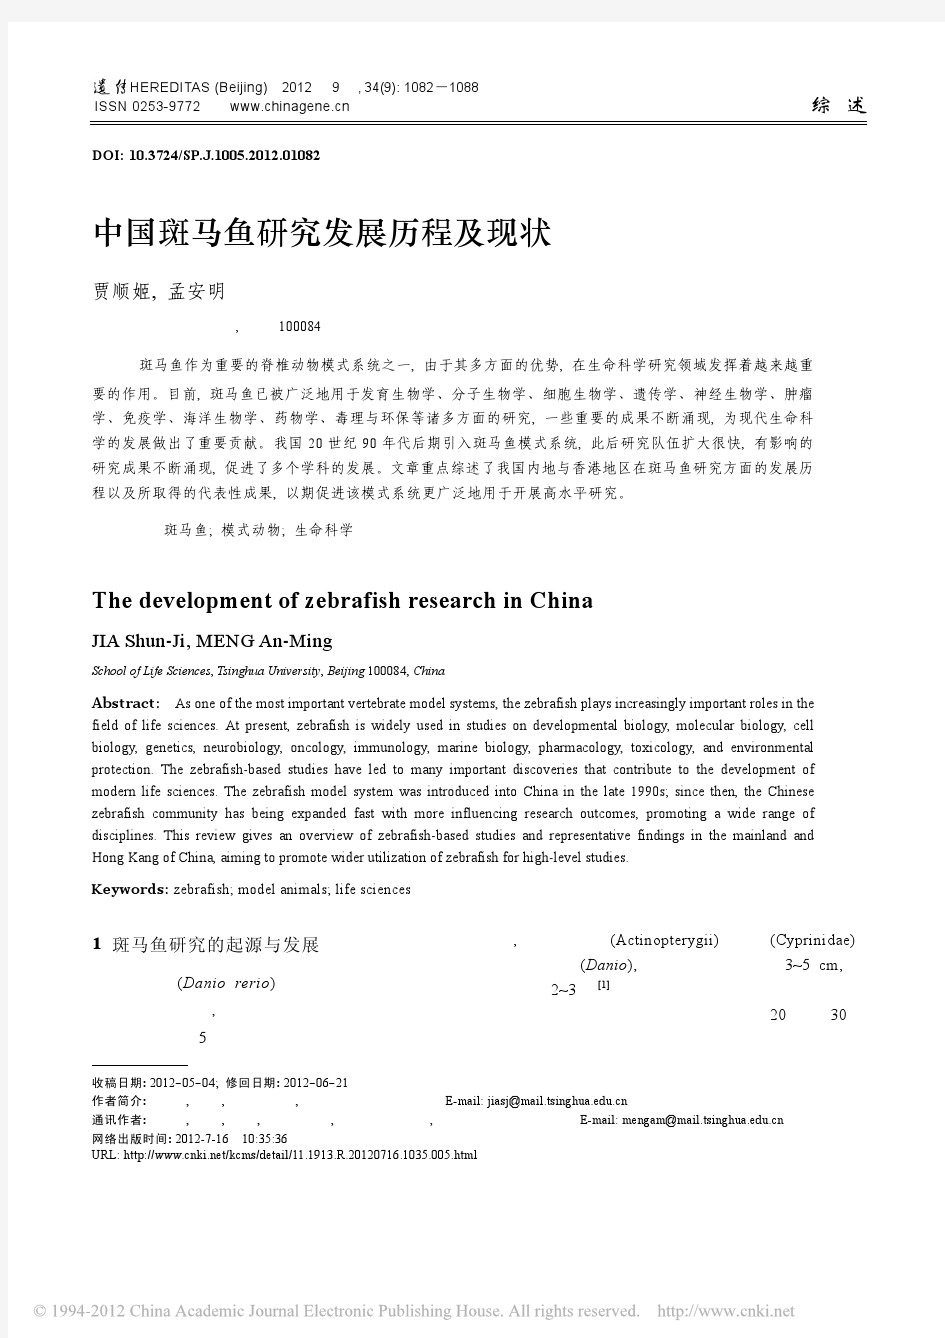 中国斑马鱼研究发展历程及现状